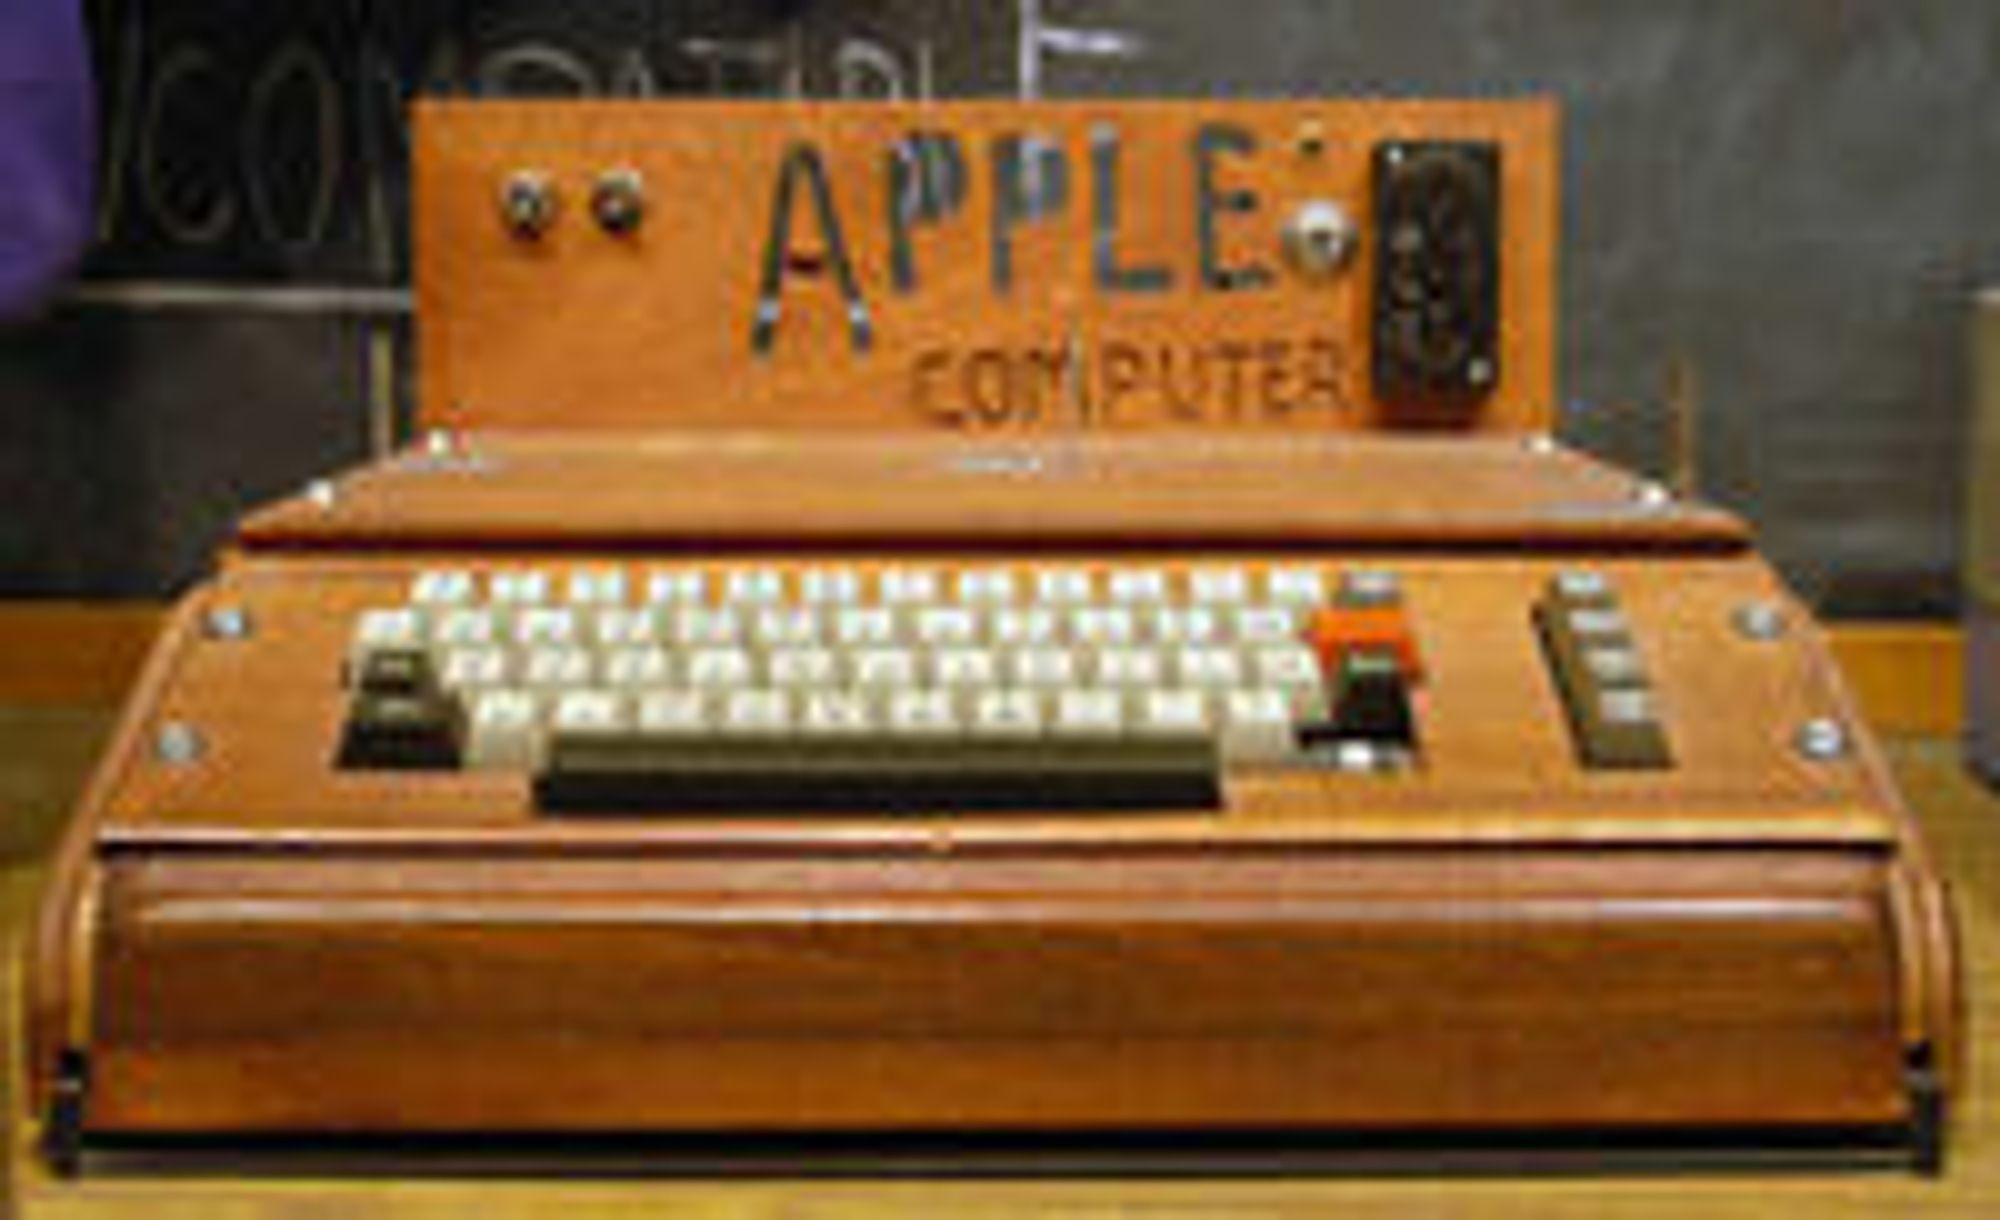 Apple I ble levert uten kabinett. Her en modell med hjemmesnekret kasse som står utstilt på museet Smithsonian.